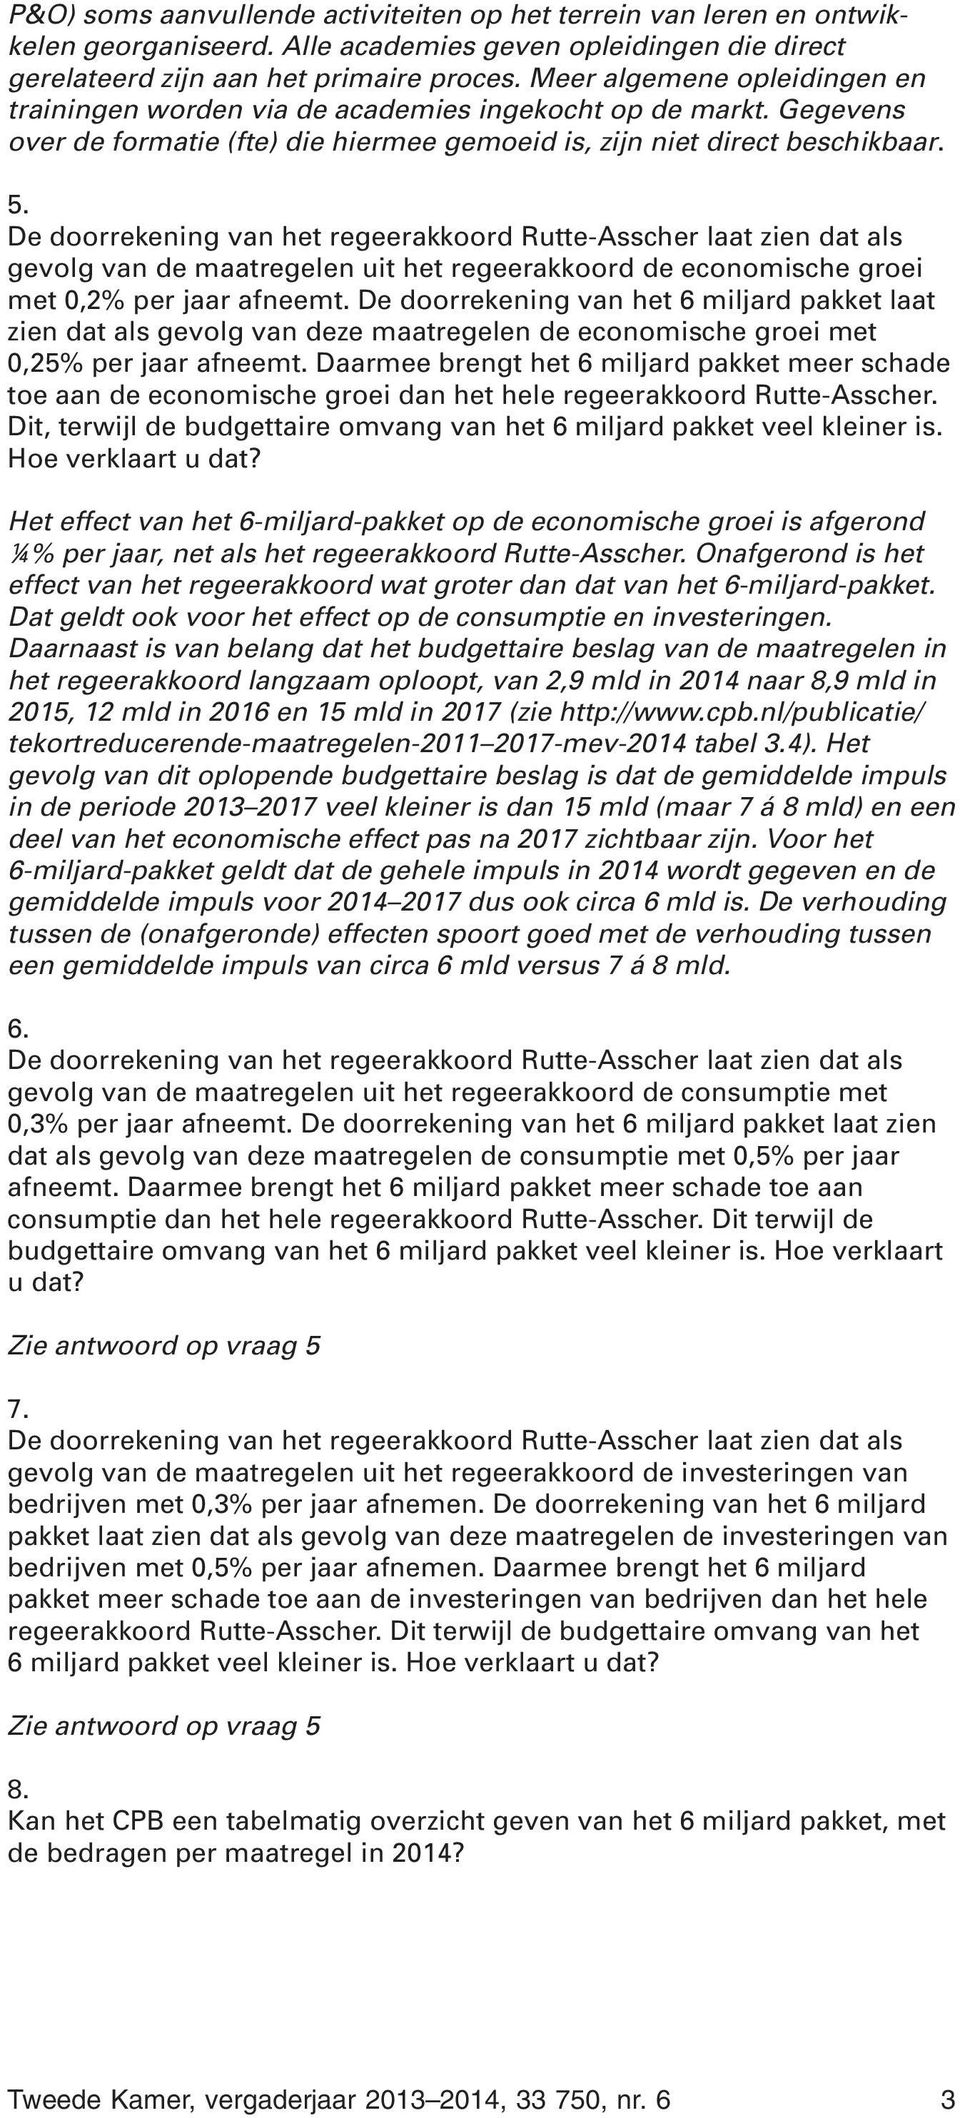 De doorrekening van het regeerakkoord Rutte-Asscher laat zien dat als gevolg van de maatregelen uit het regeerakkoord de economische groei met 0,2% per jaar afneemt.